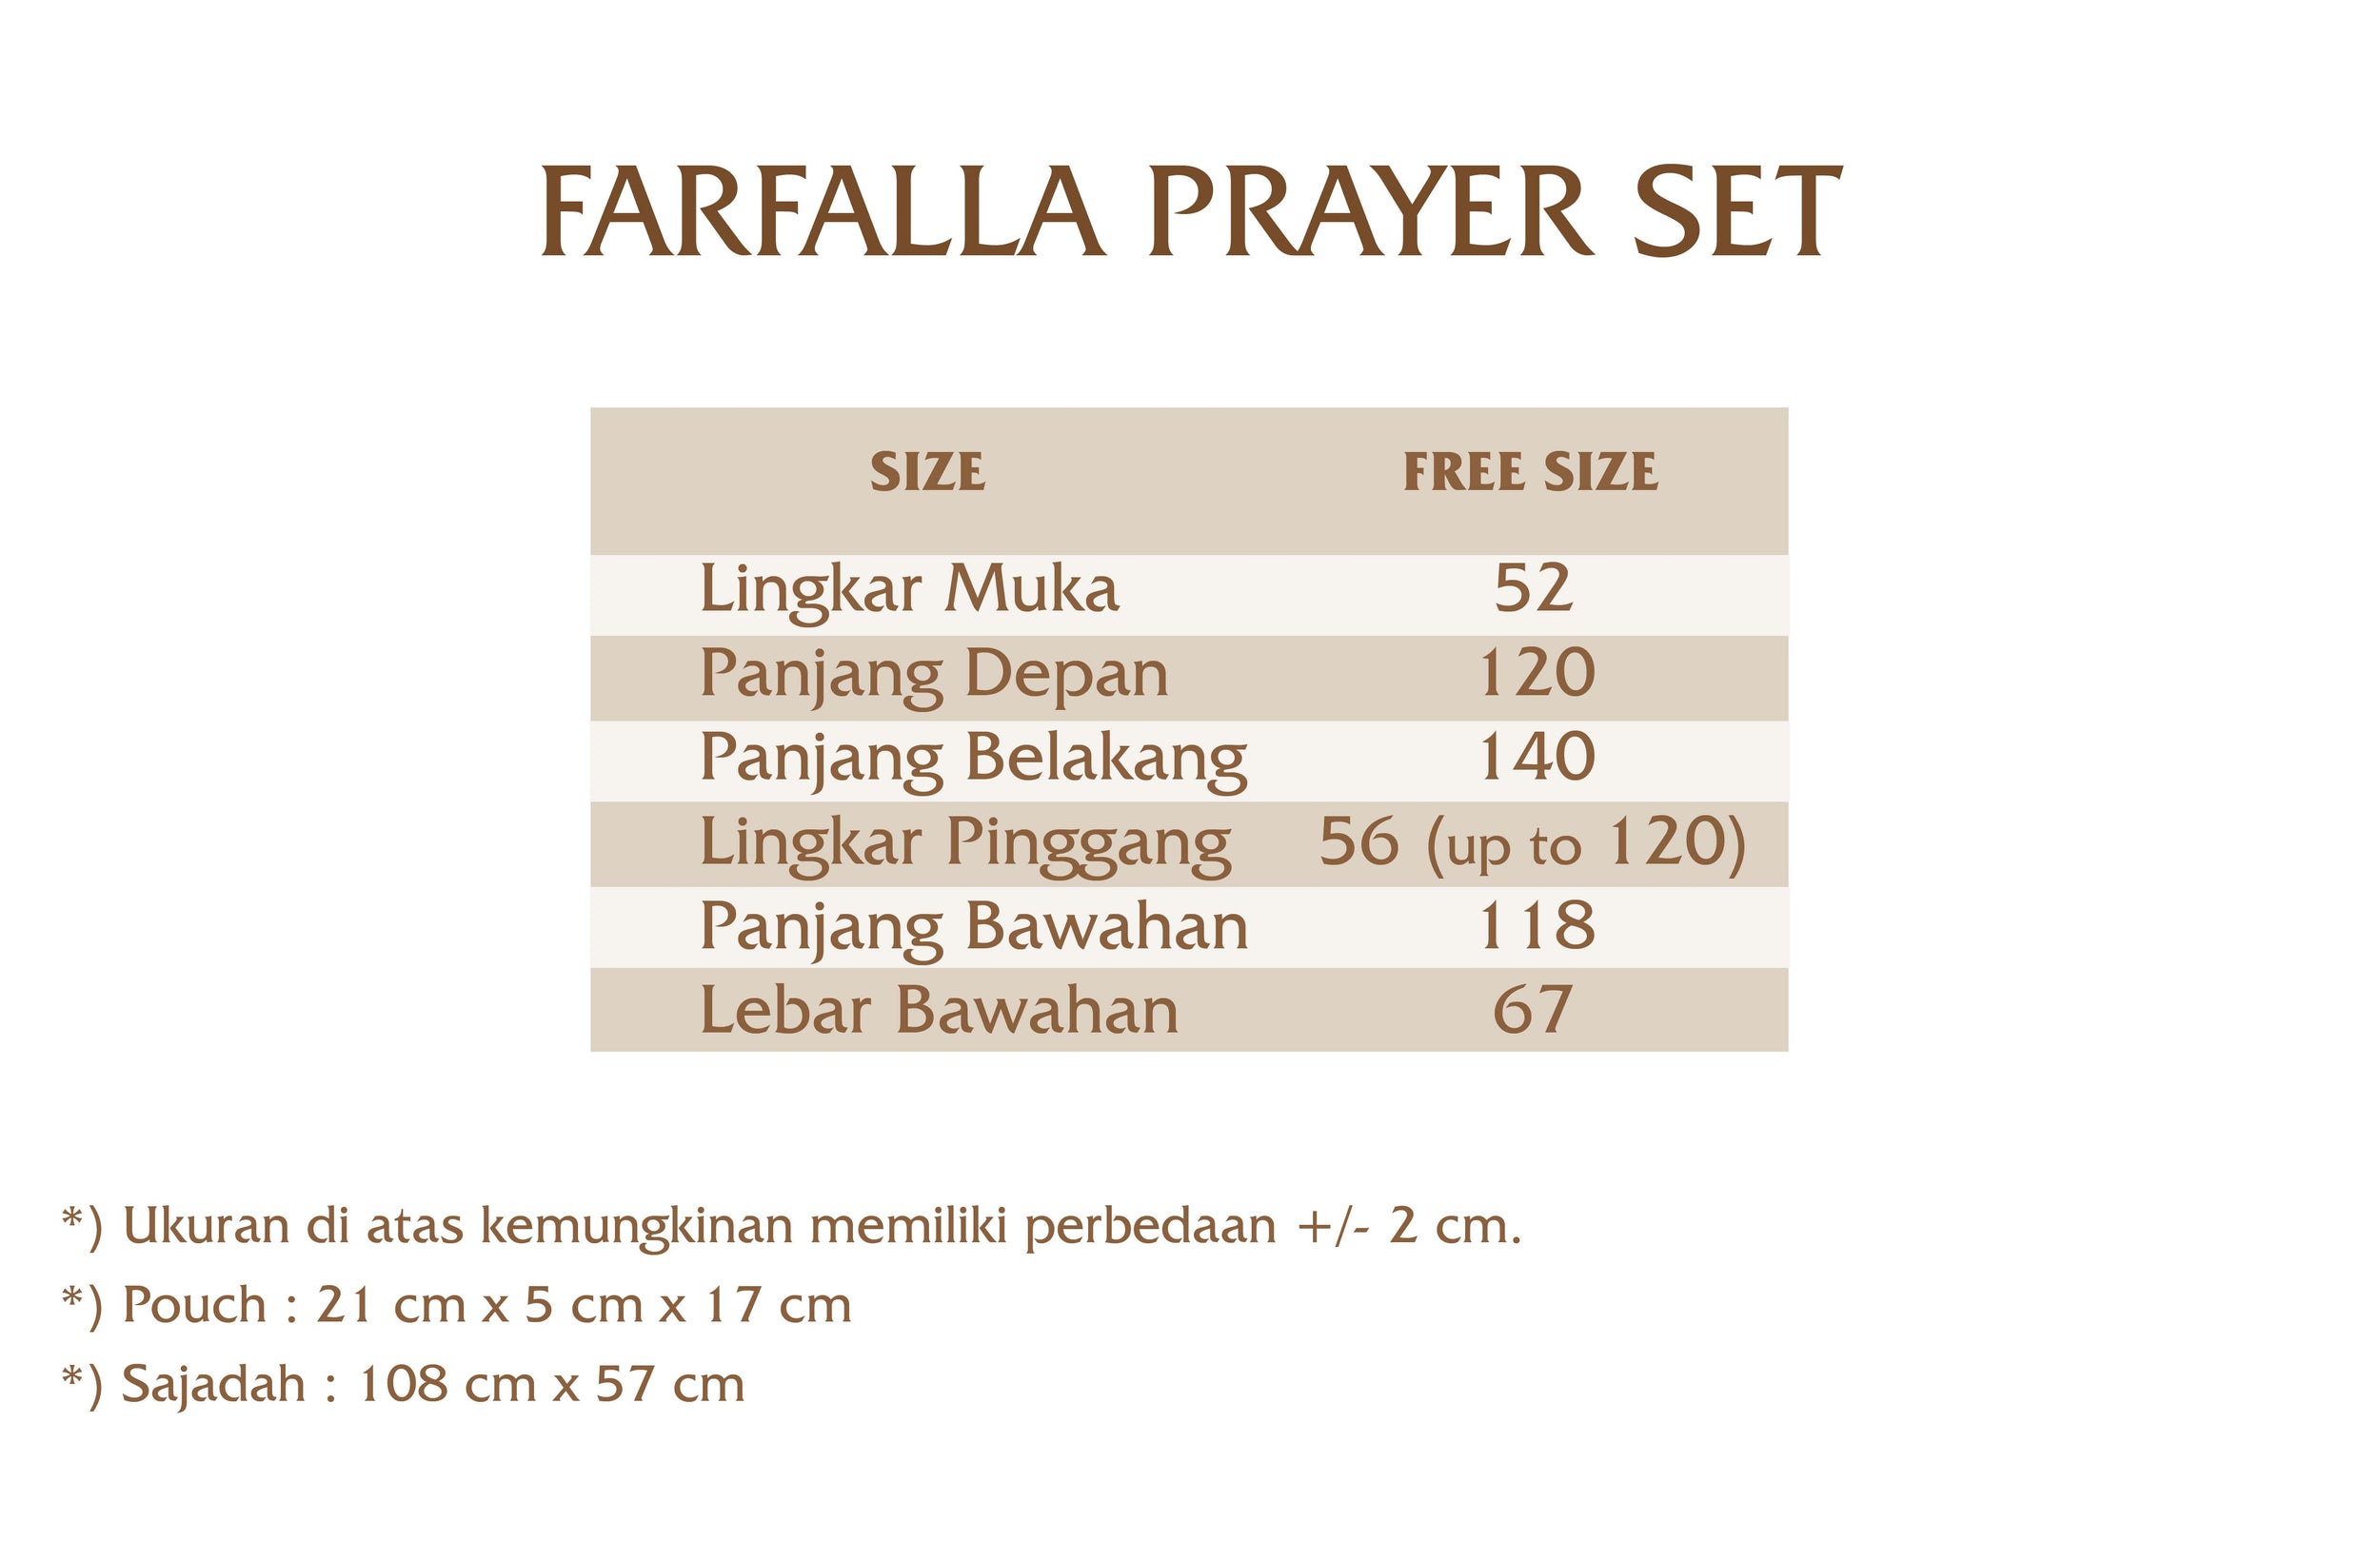 Farfalla Prayer Set